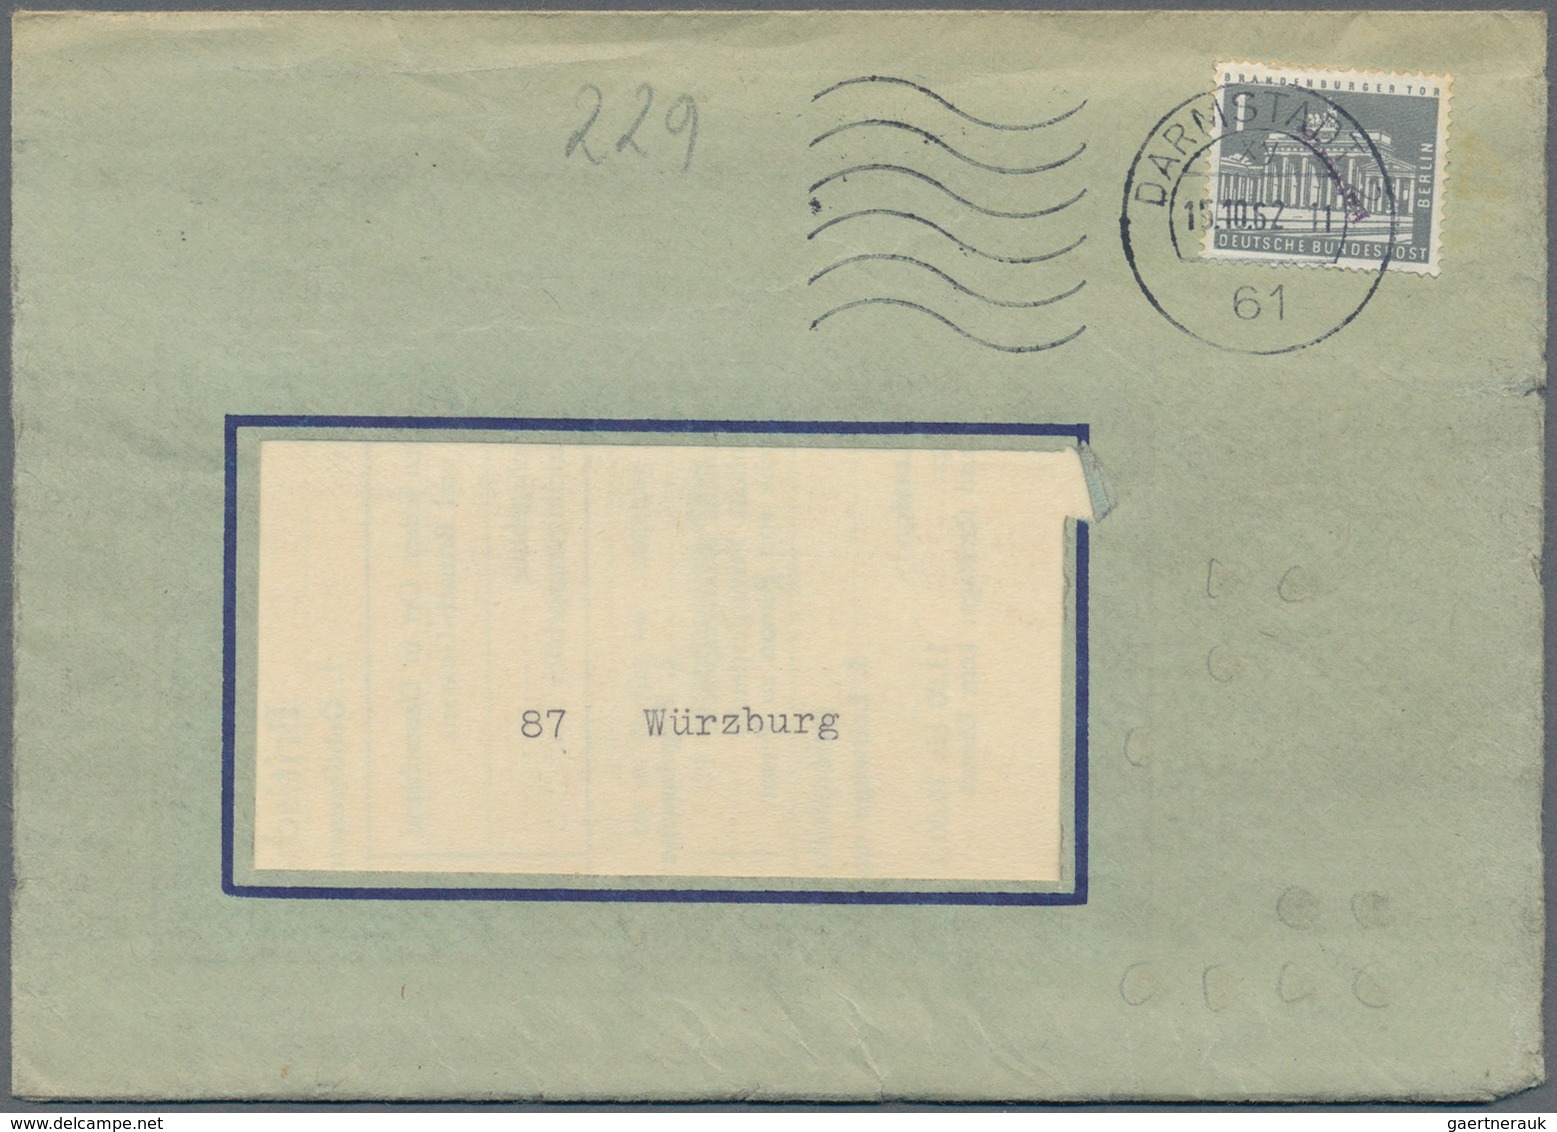 Thematik: Postautomation / postal mecanization: 1960/1975 (ca.), interessante Sammlung mit Schwerpun